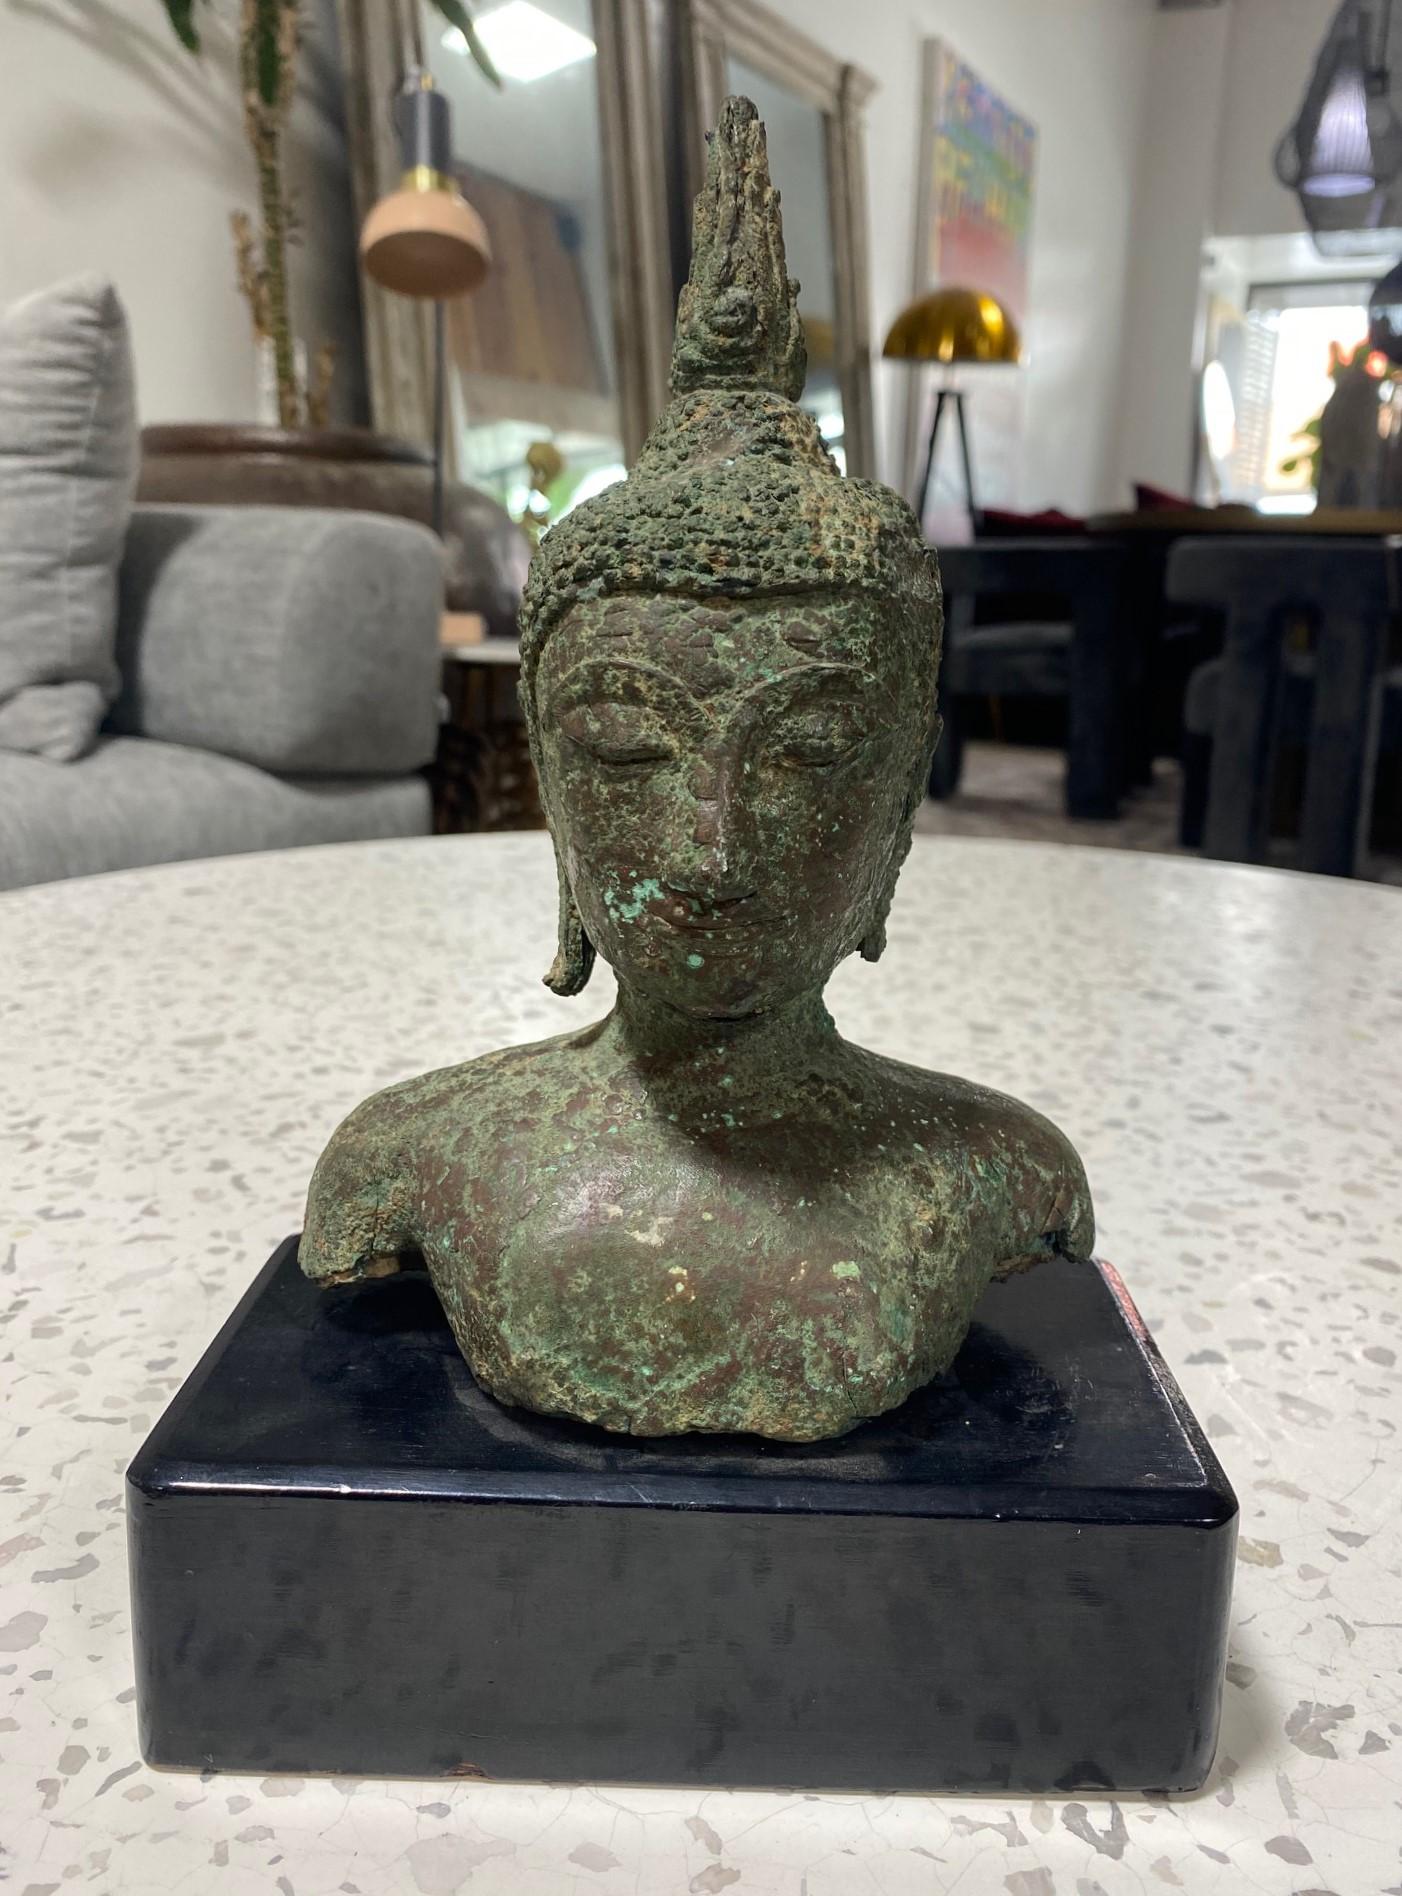 Tête de bouddha en bronze magnifiquement sculptée, originaire de Thaïlande/ Siam et du sud-est asiatique, sur un socle en bois personnalisé. Le Bouddha a les yeux fermés dans une méditation sereine. La pièce a un toucher et un poids merveilleux.